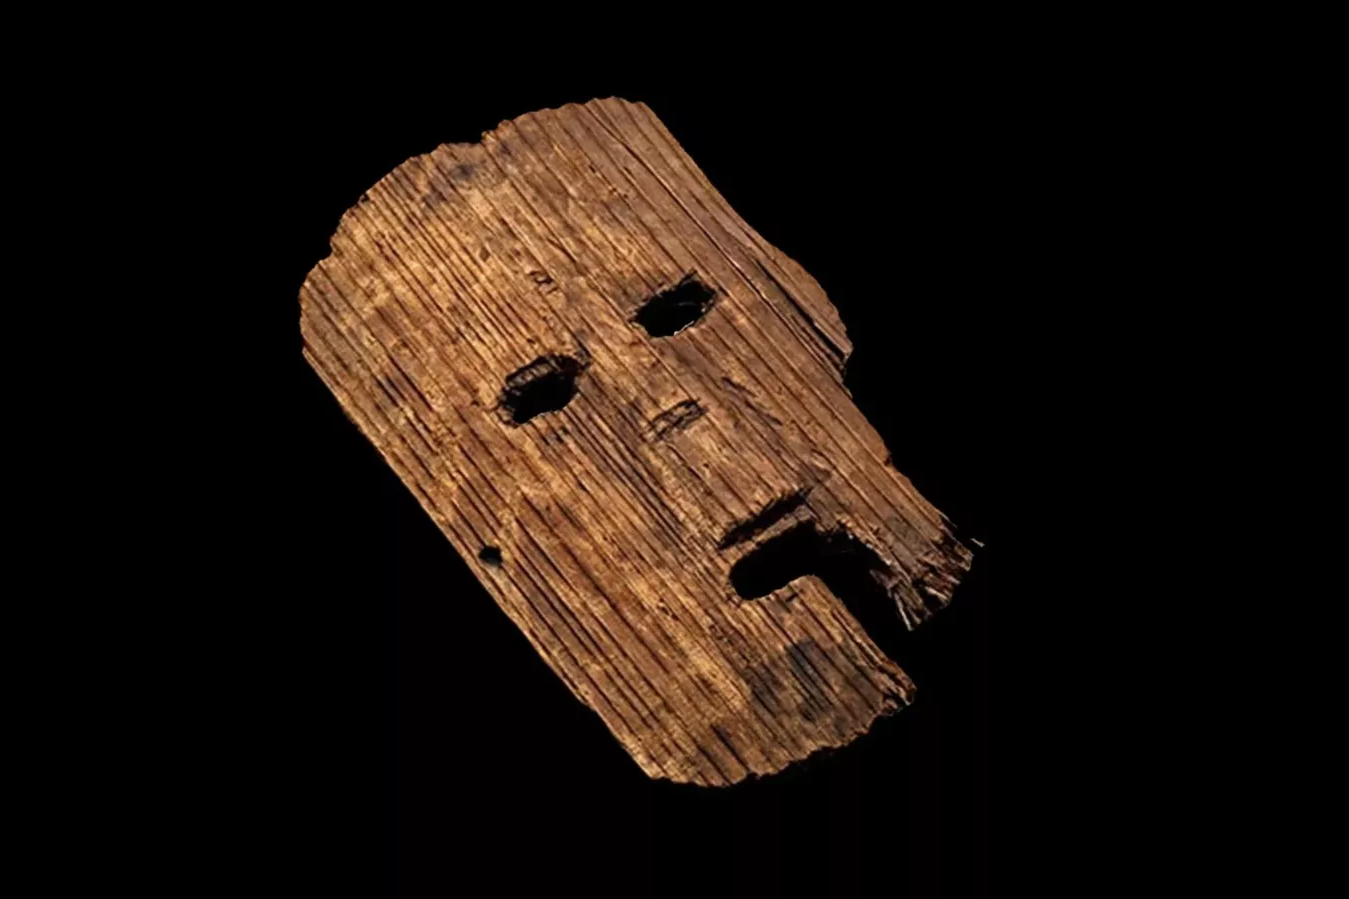 В японской префектуре Осака нашли 1800-летнюю деревянную ритуальную маску